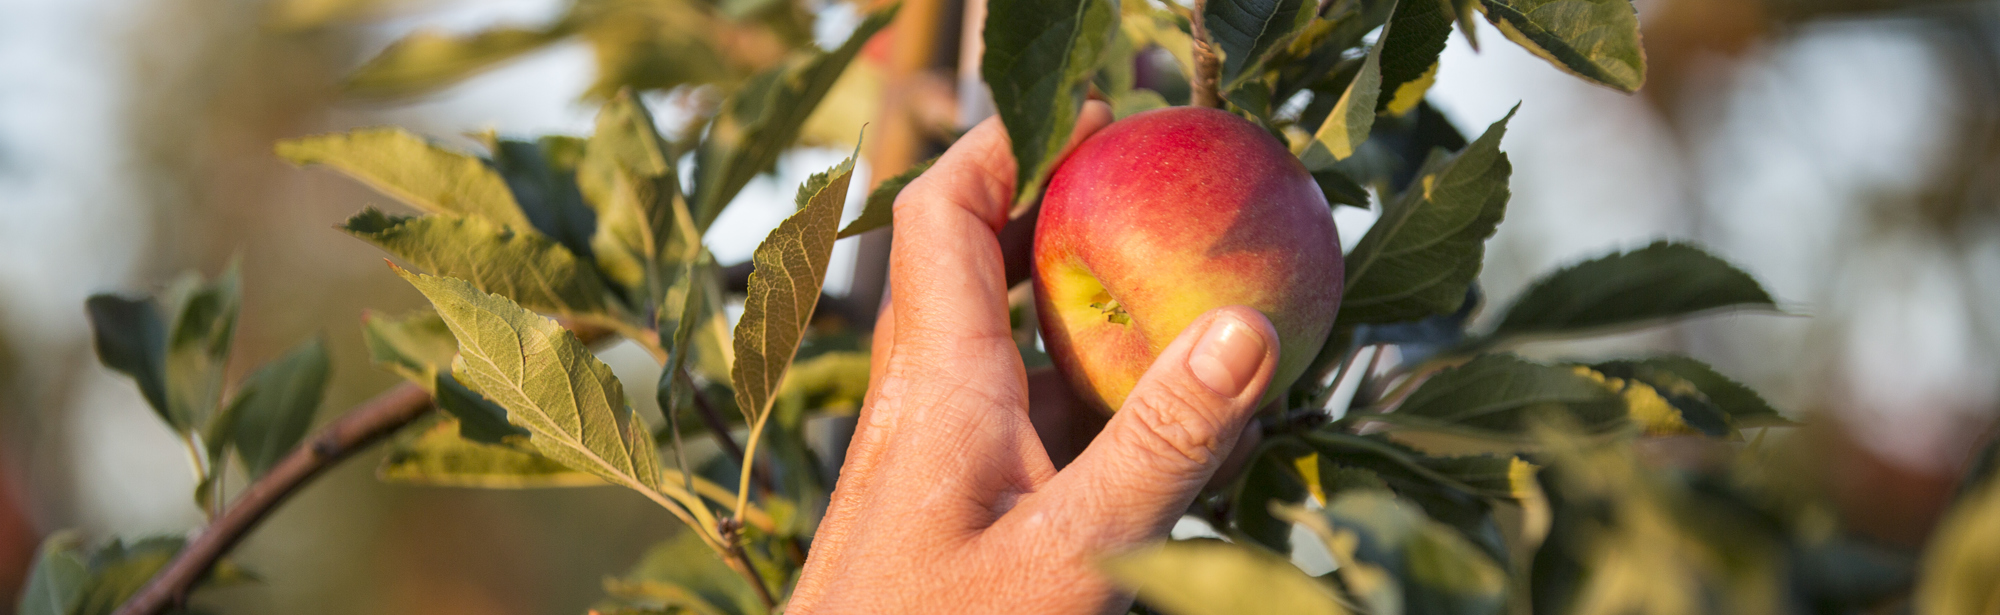 Een hand die een appel plukt van een fruitboom